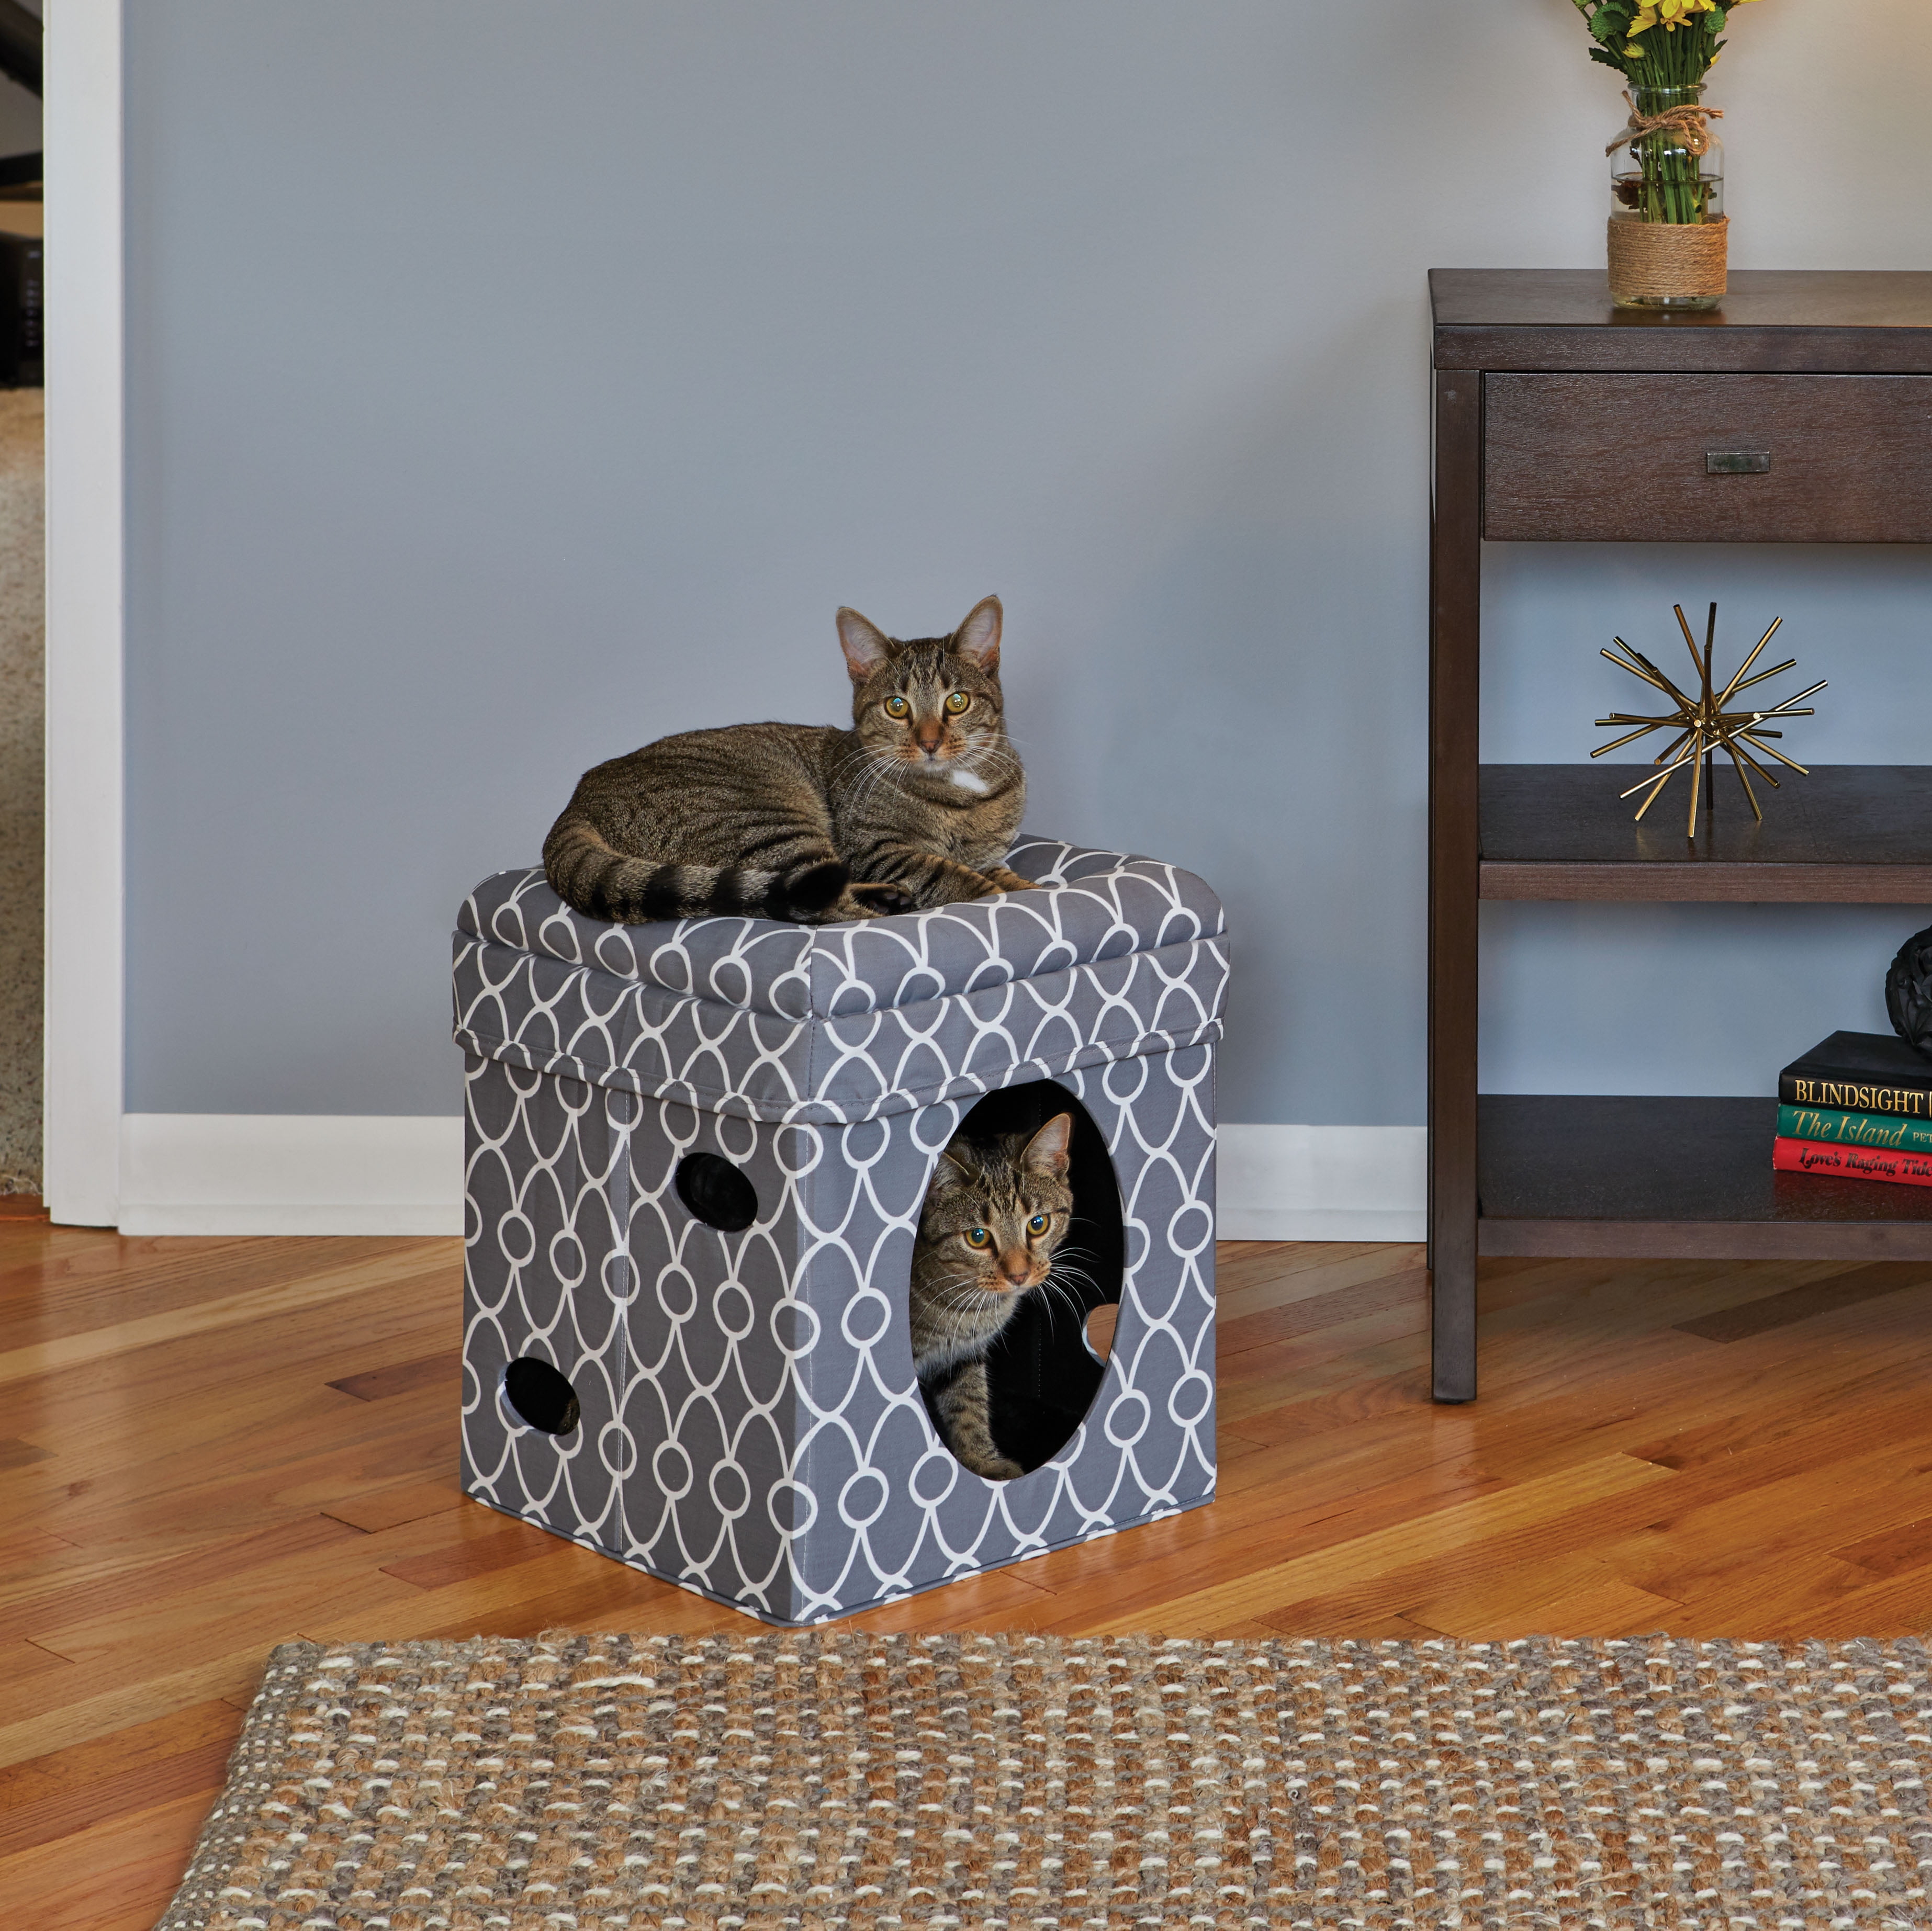 Cube cats. Домик Midwest curious. Домик куб для котов. Матерчатый куб для кошки. Домик для кошек дружок куб.